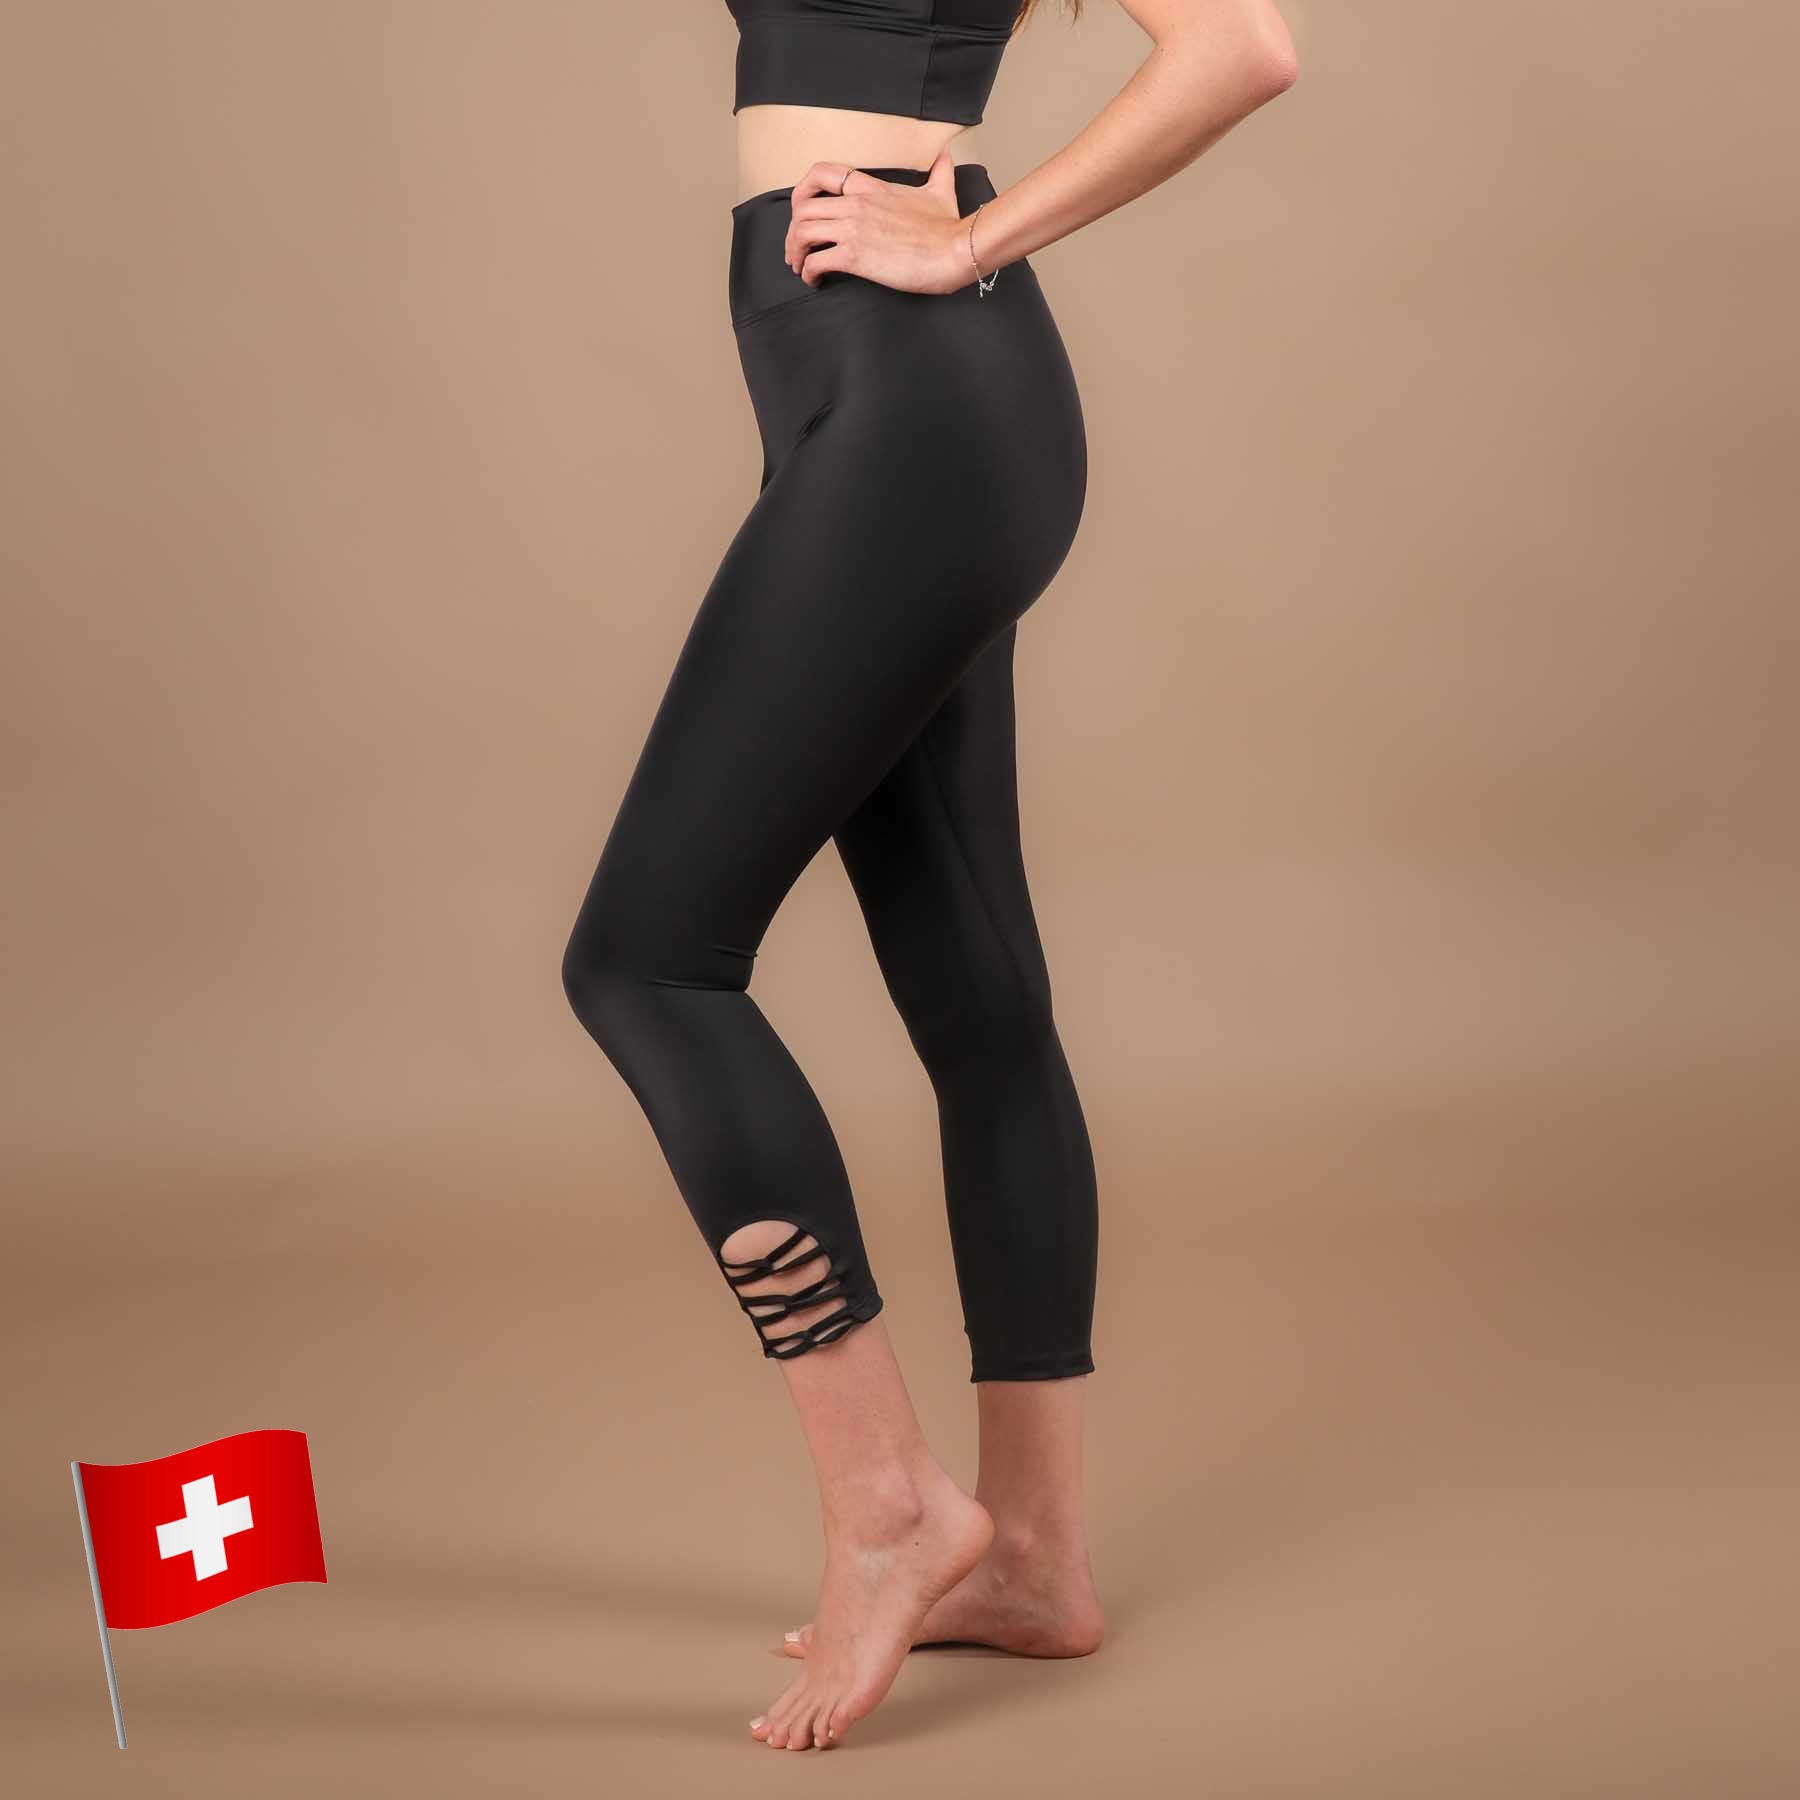 Yoga Leggings 7/8 Eco Mare in der Schweiz hergestellt aus recyceltem Econyl Stoff schwarz